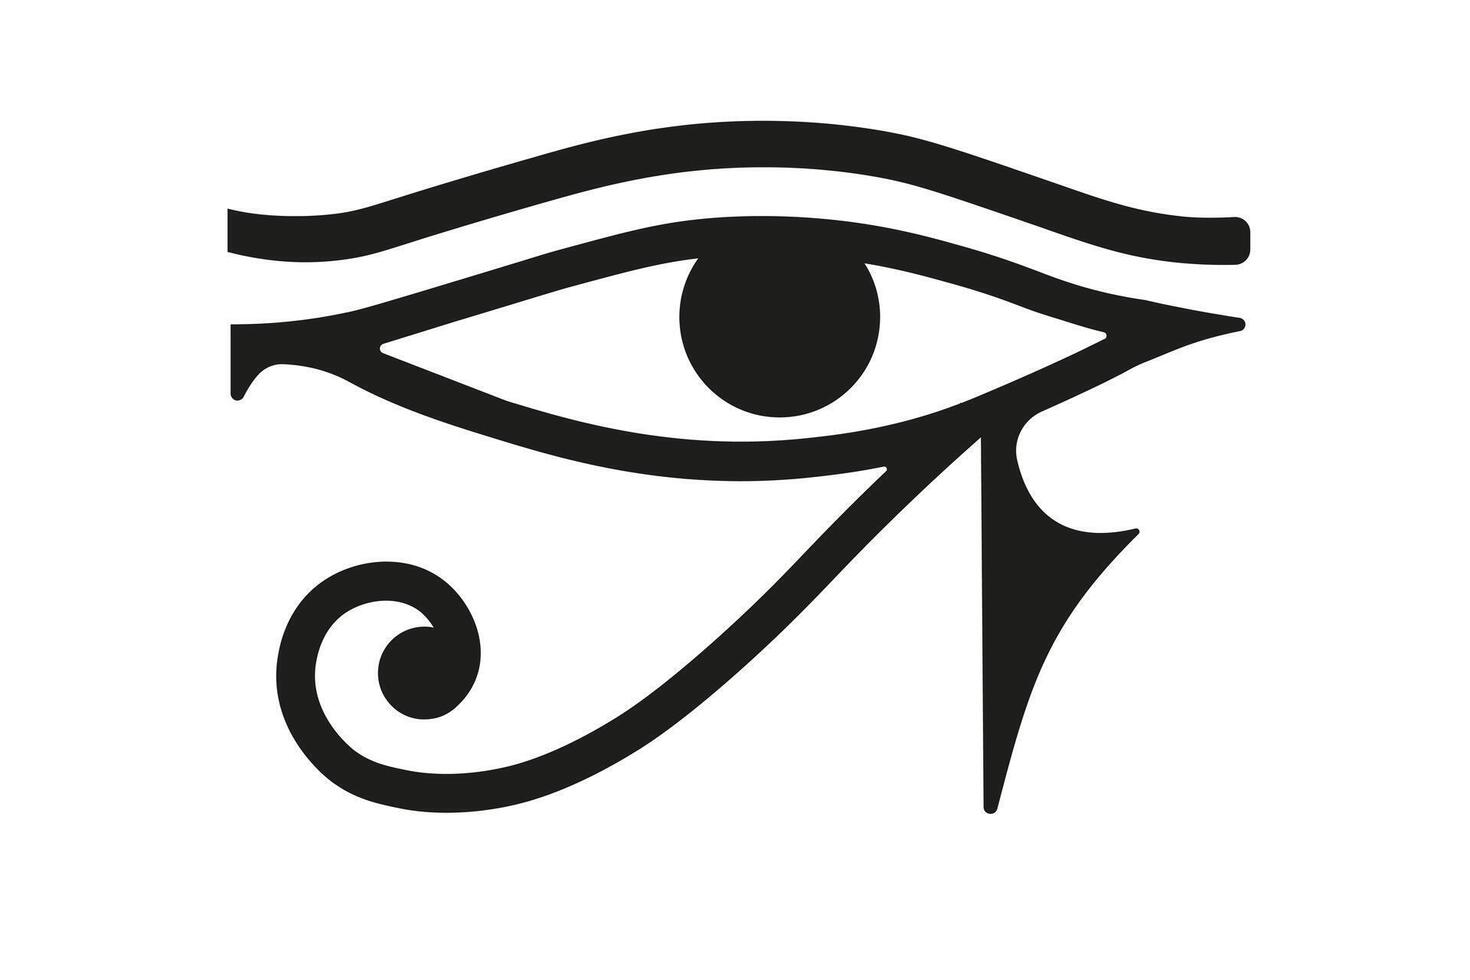 The Eye of Horus , symbol, logo, black flat on white background isolated vector